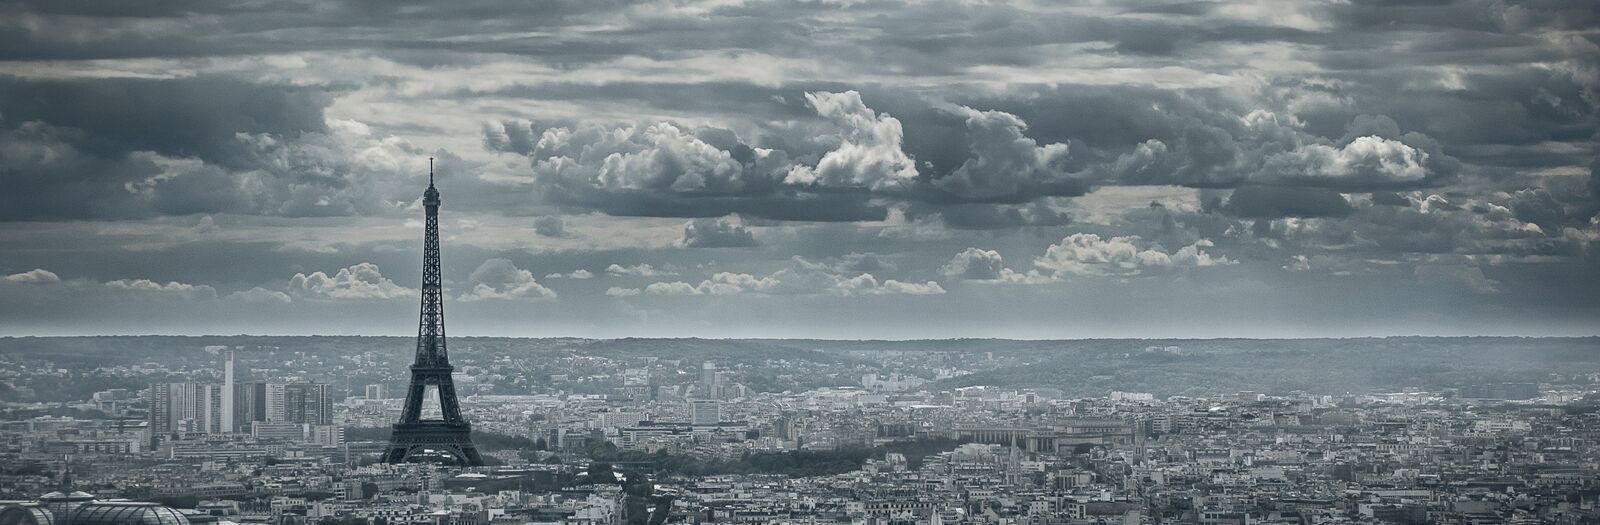 Keeping Watch Over Paris | International Award Winner